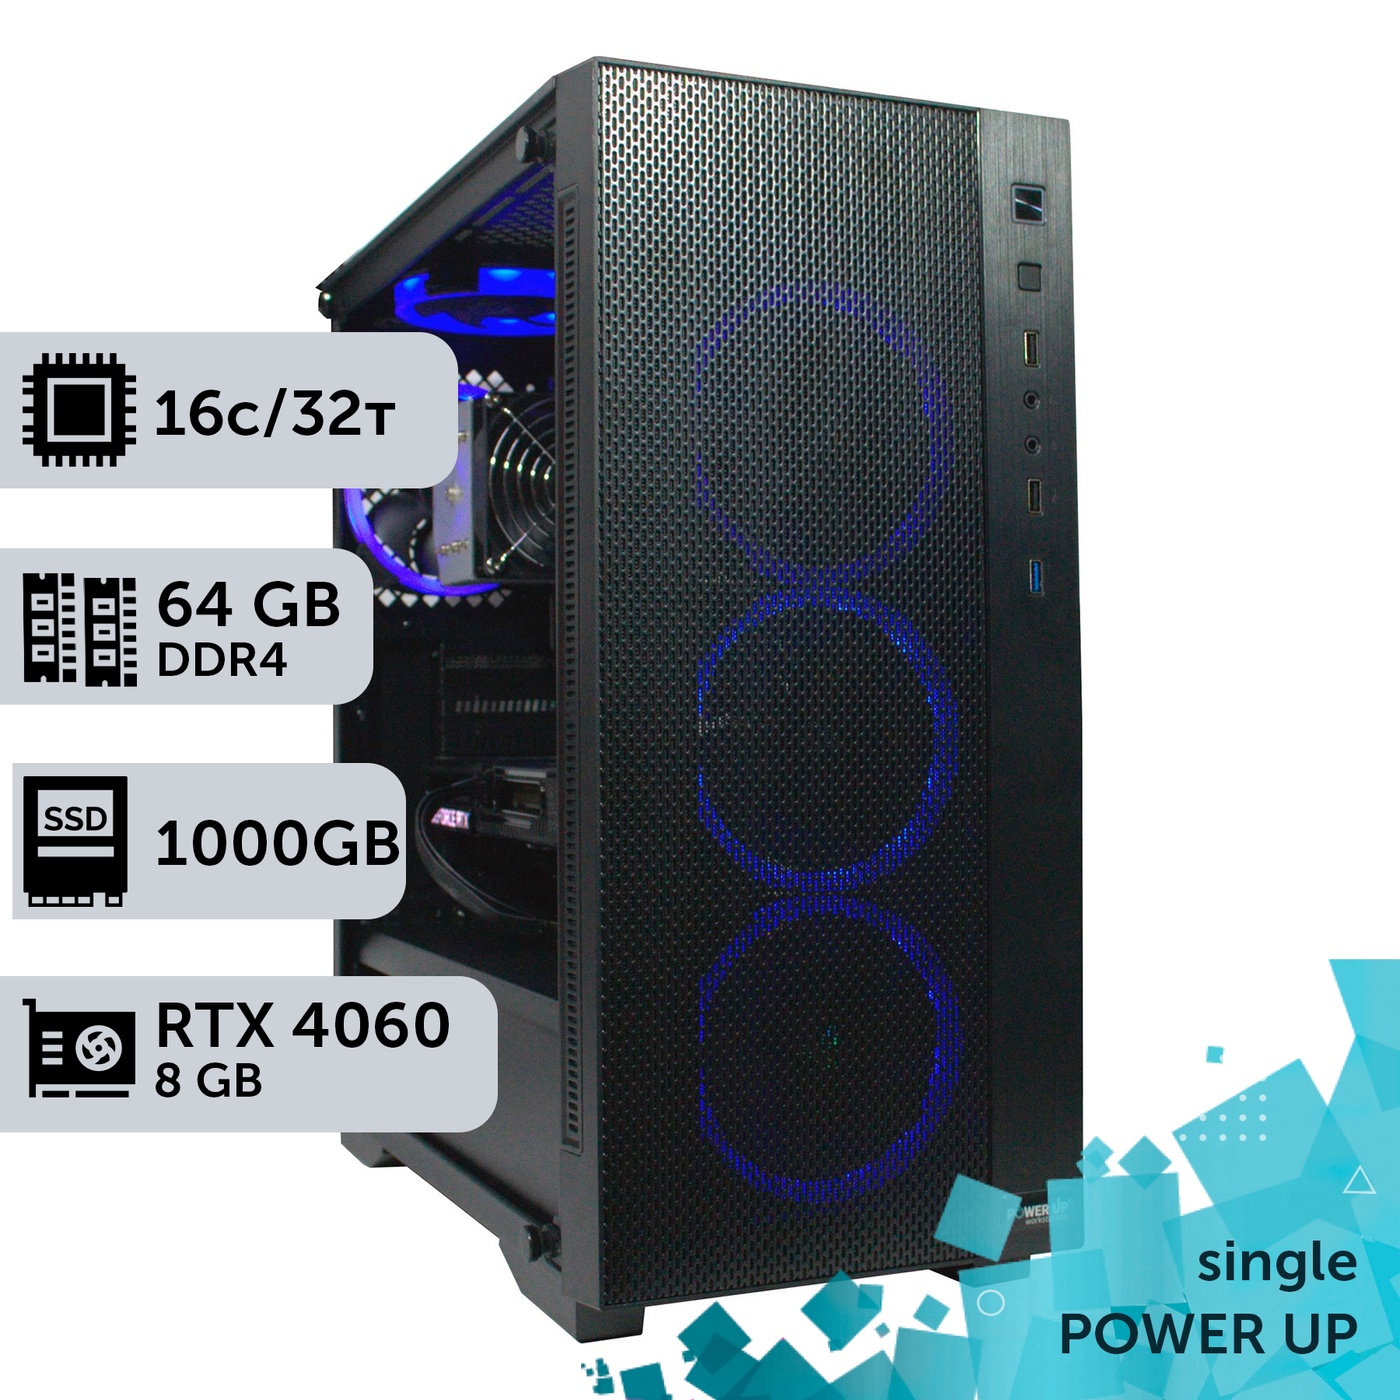 Робоча станція PowerUp #244 AMD EPYC 7551/128 GB/SSD 1TB/GeForce RTX 3060 12GB